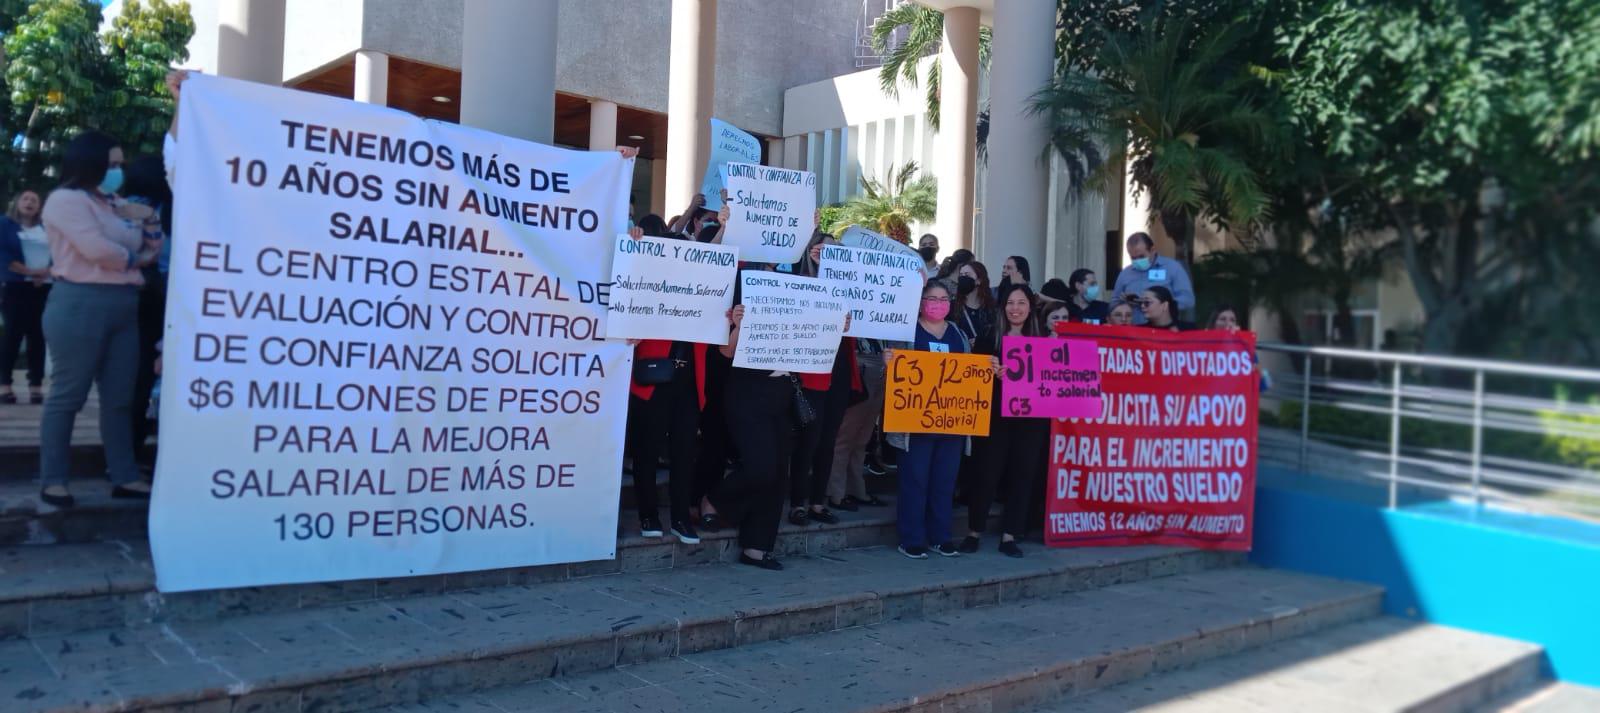 $!Trabajadores del C3 reclaman en el Congreso de Sinaloa aumento de sueldo después de 12 años